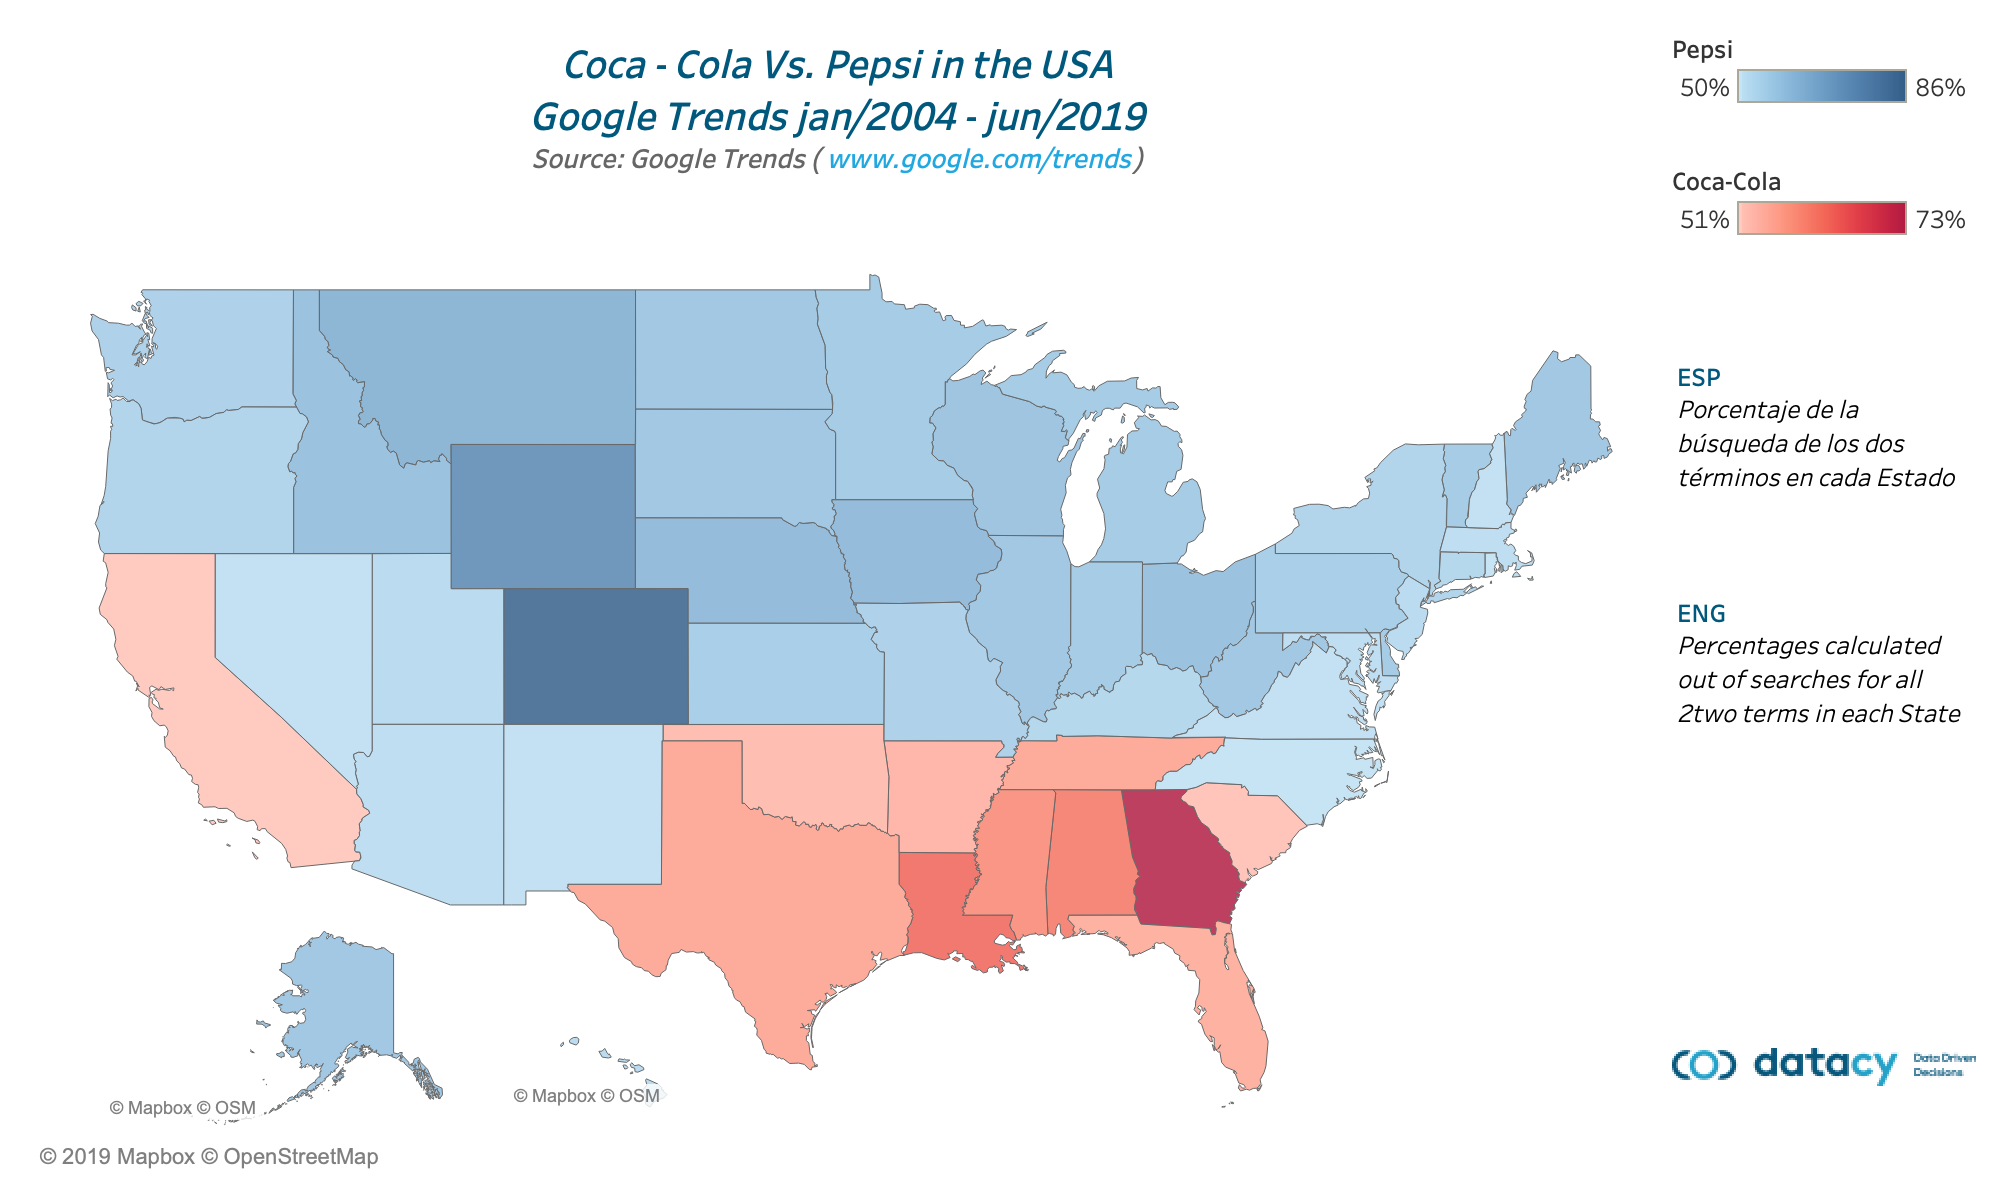 ¿Que se bebe más Pepsi o Coca-Cola en USA